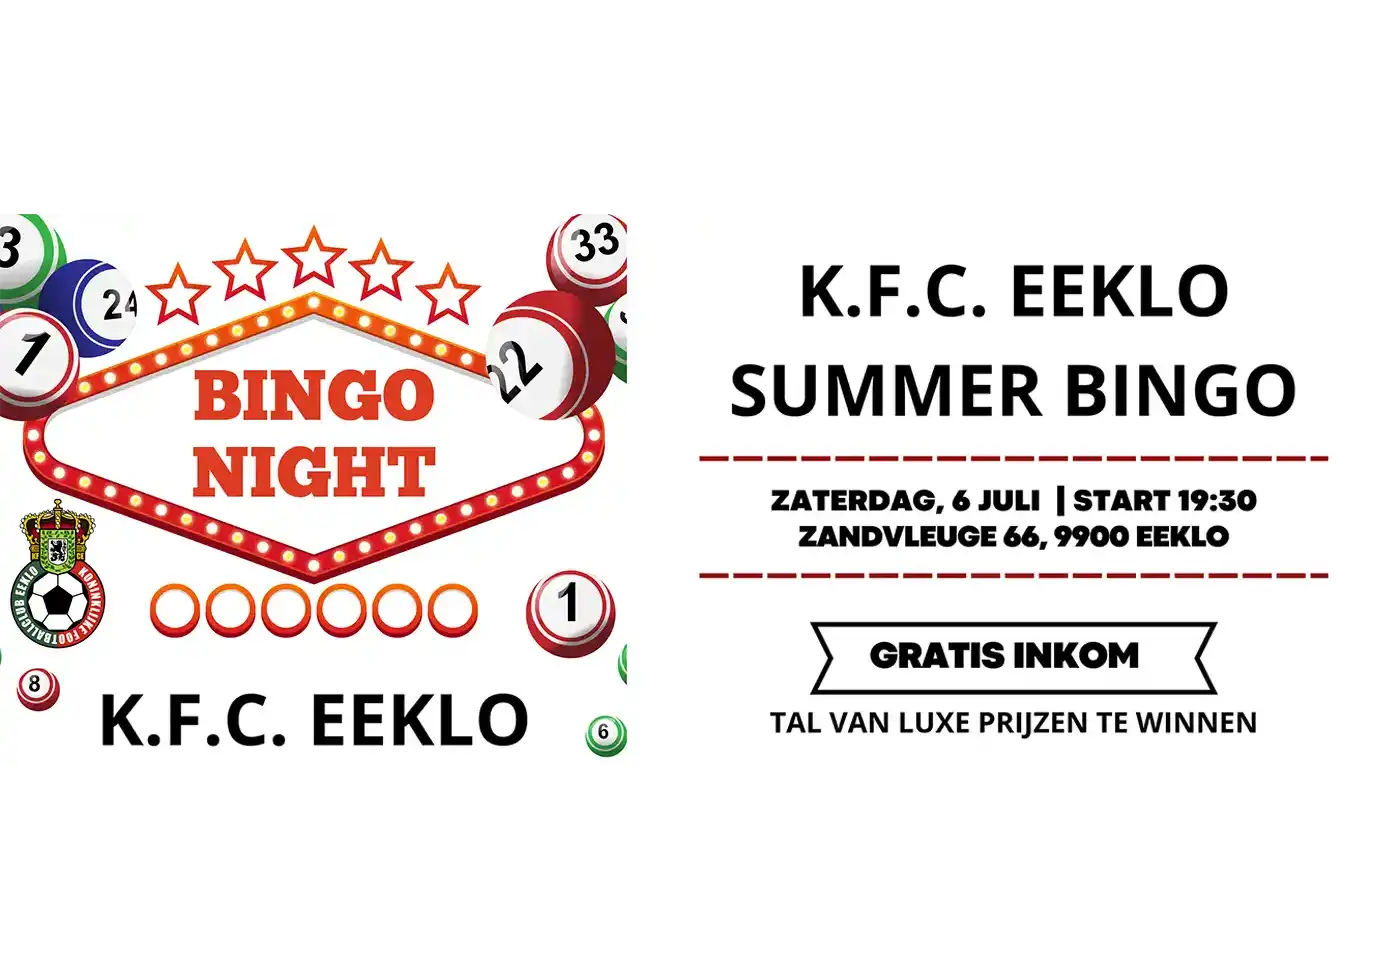 KFC Eeklo lanceert een zomerbingo-night met luxe prijzen